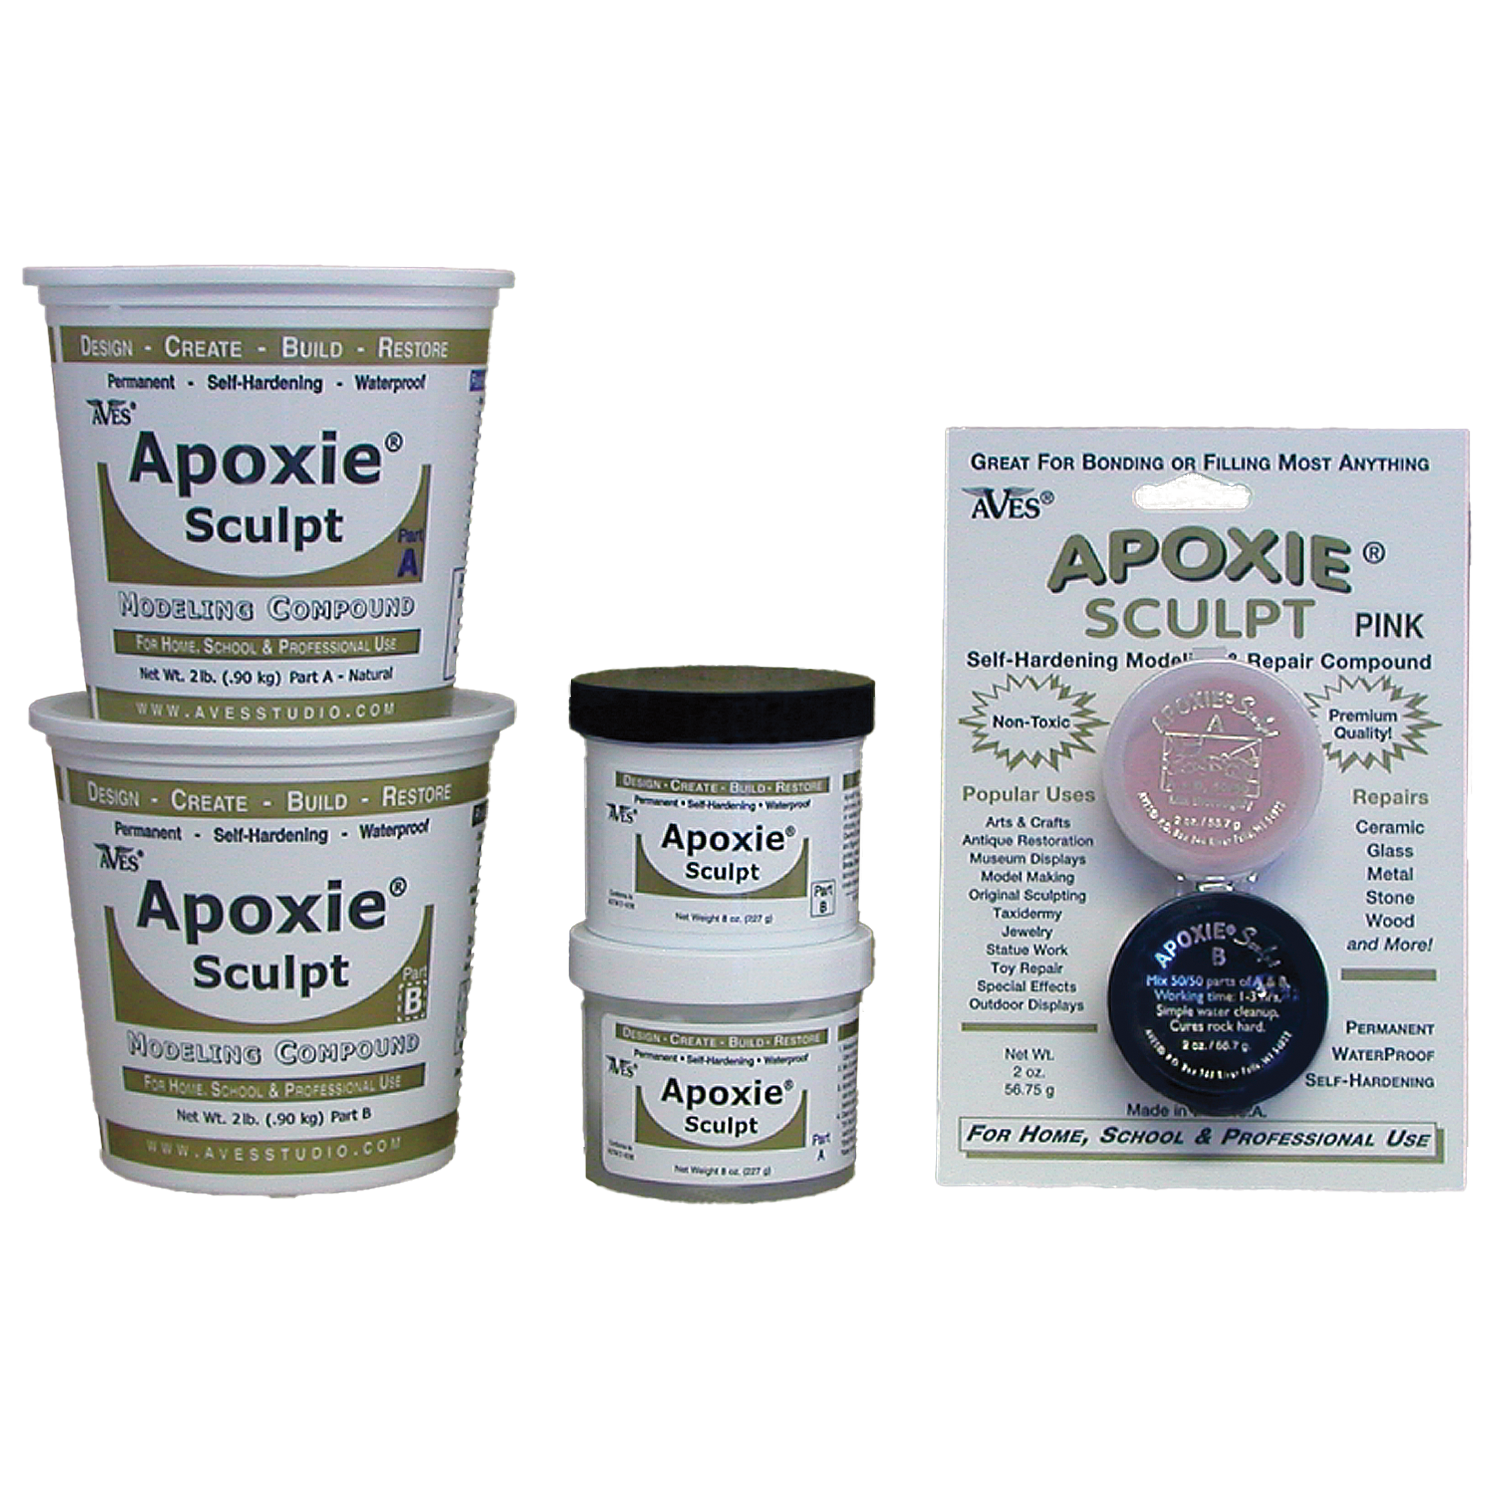 Apoxie Sculpt - Matuska Taxidermy Supply Company